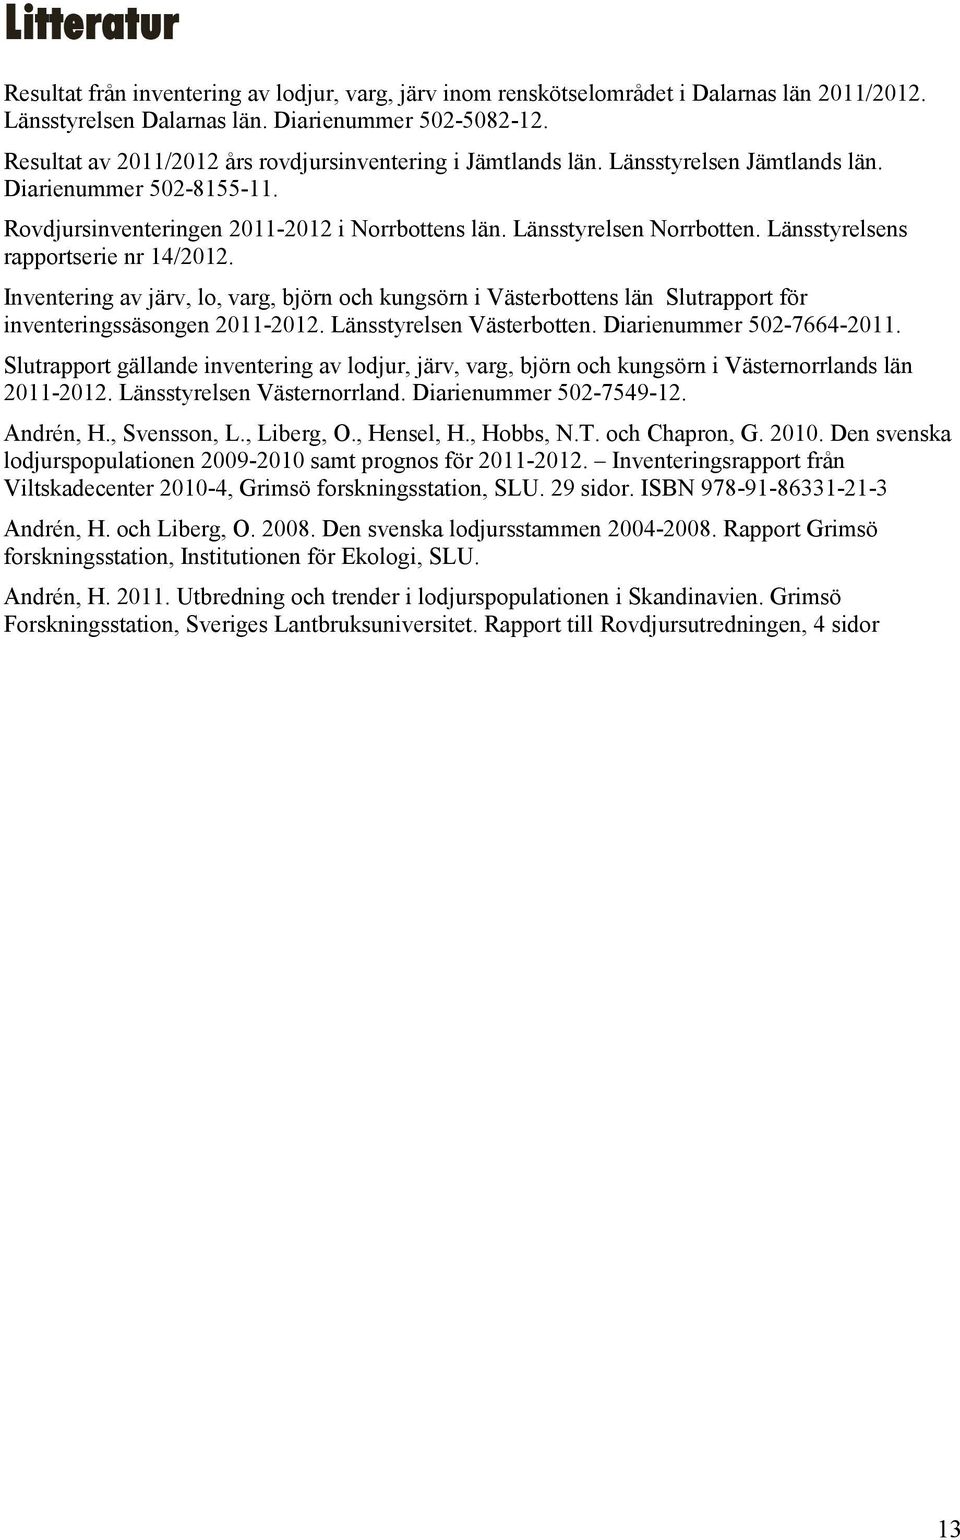 Länsstyrelsens rapportserie nr 14/2012. Inventering av järv, lo, varg, björn och kungsörn i Västerbottens län Slutrapport för inventeringssäsongen 2011-2012. Länsstyrelsen Västerbotten.